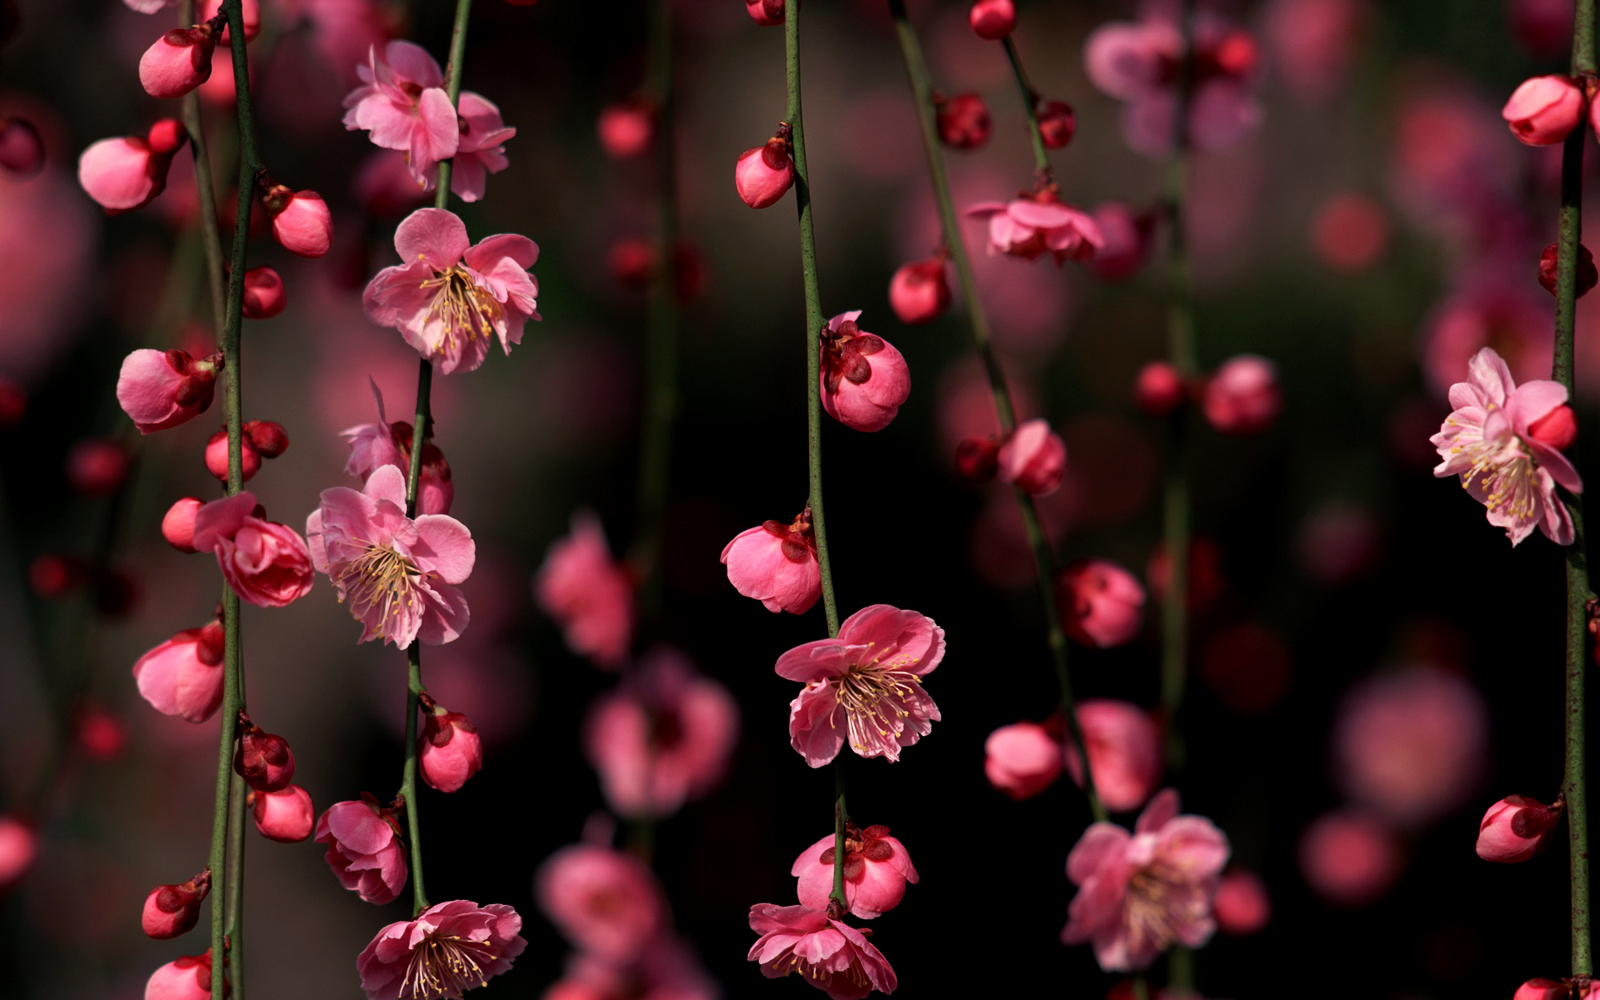 wallpaper for desktop, laptop | nf15-pink-blossom-nature-flower-spring-love